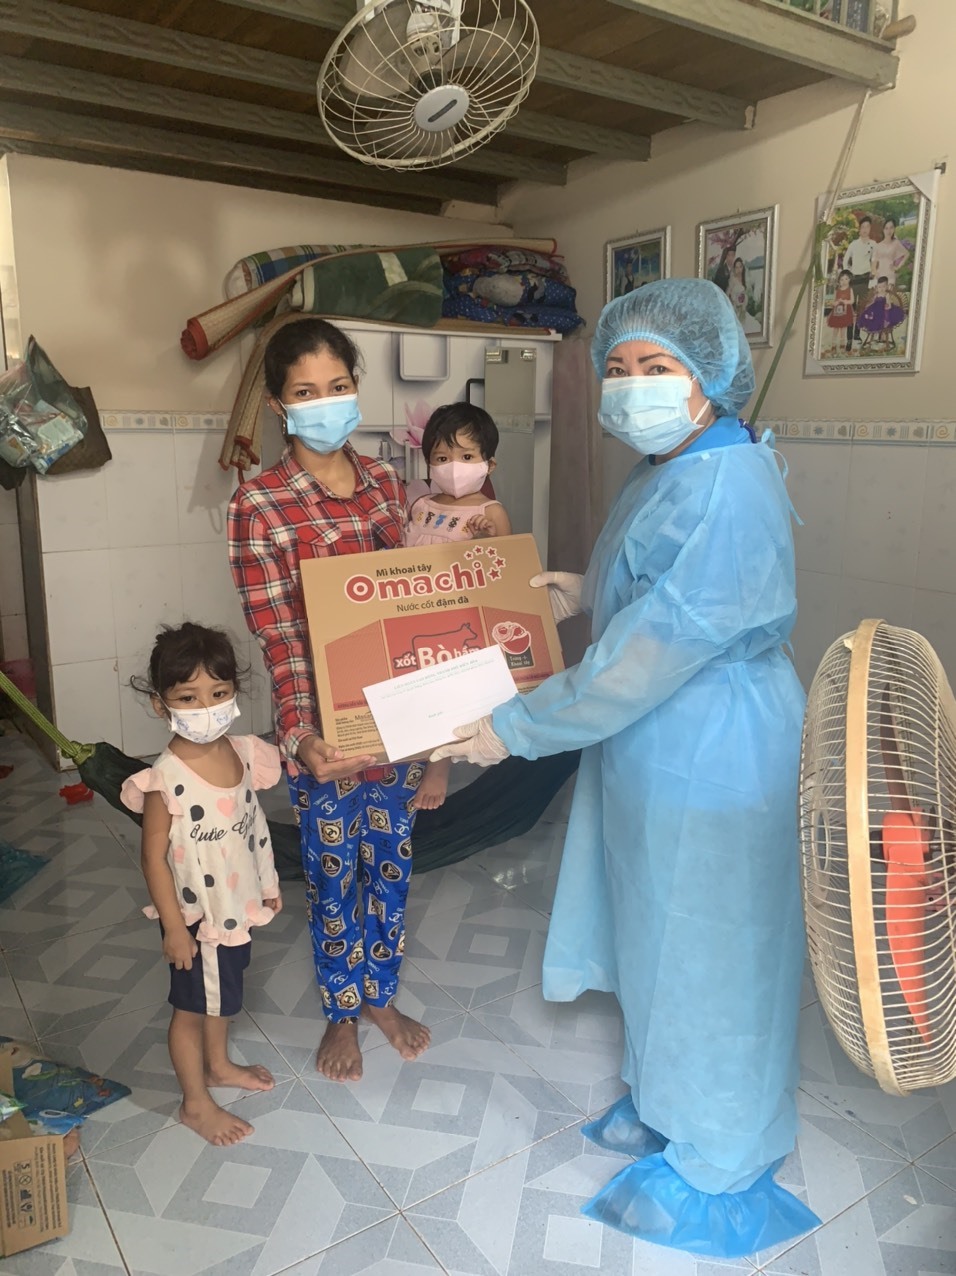 Chị Danh Thị Ngoan (quê tỉnh Kiên Giang), công nhân Công ty TNHH Hố Nai được hỗ trợ quà, đã có tiền mua sữa cho con. Ảnh: Hà Anh Chiến